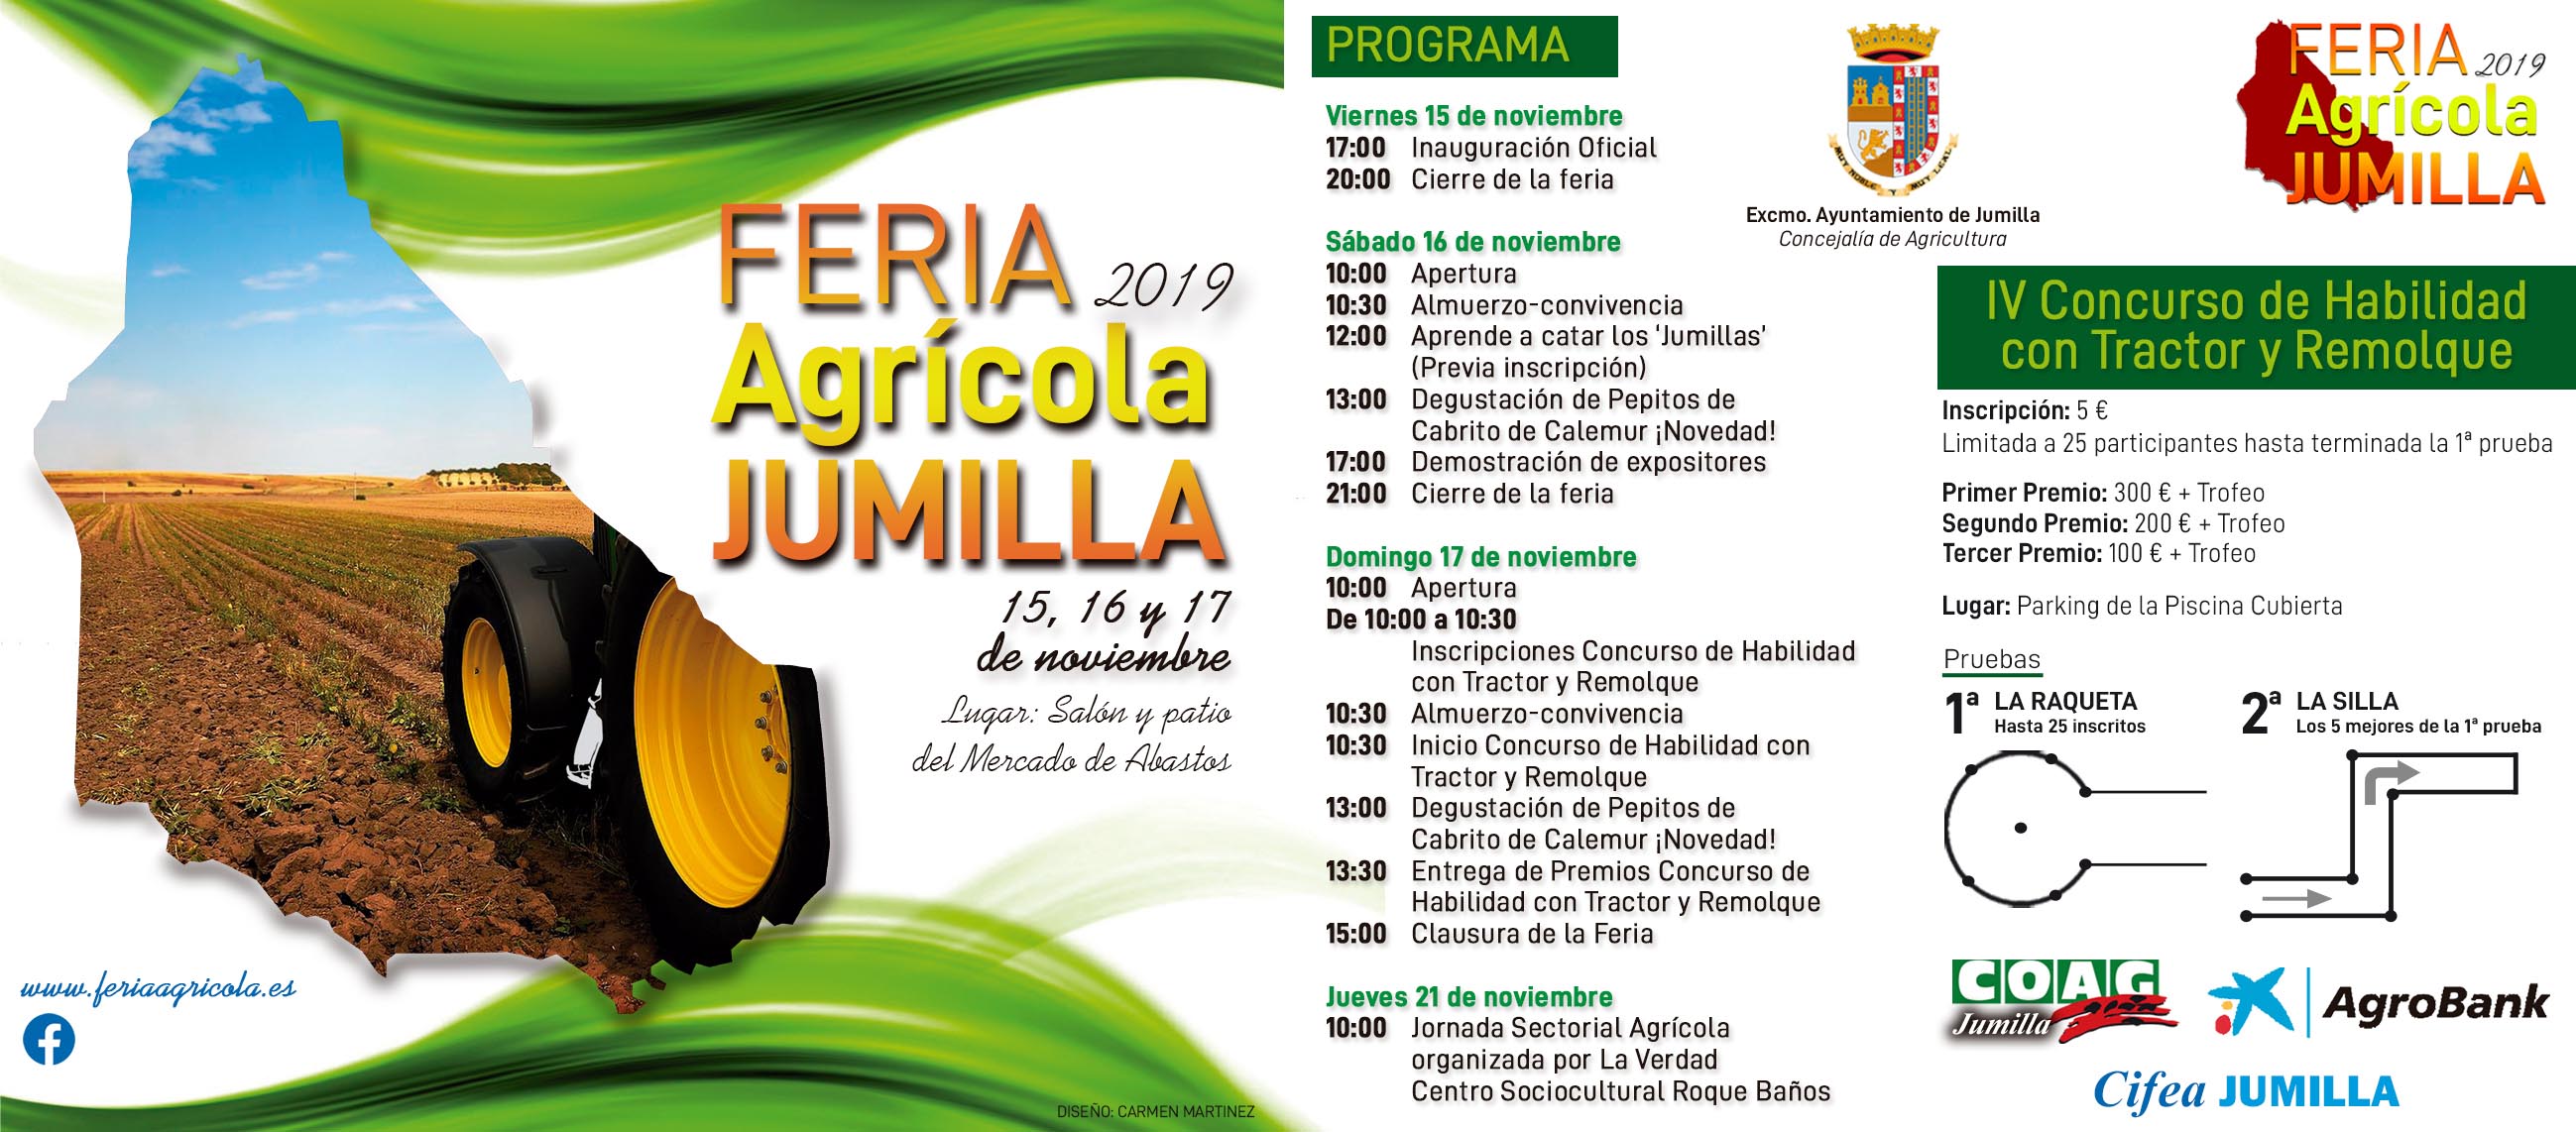 El evento agrario del año en Jumilla se celebra este fin de semana